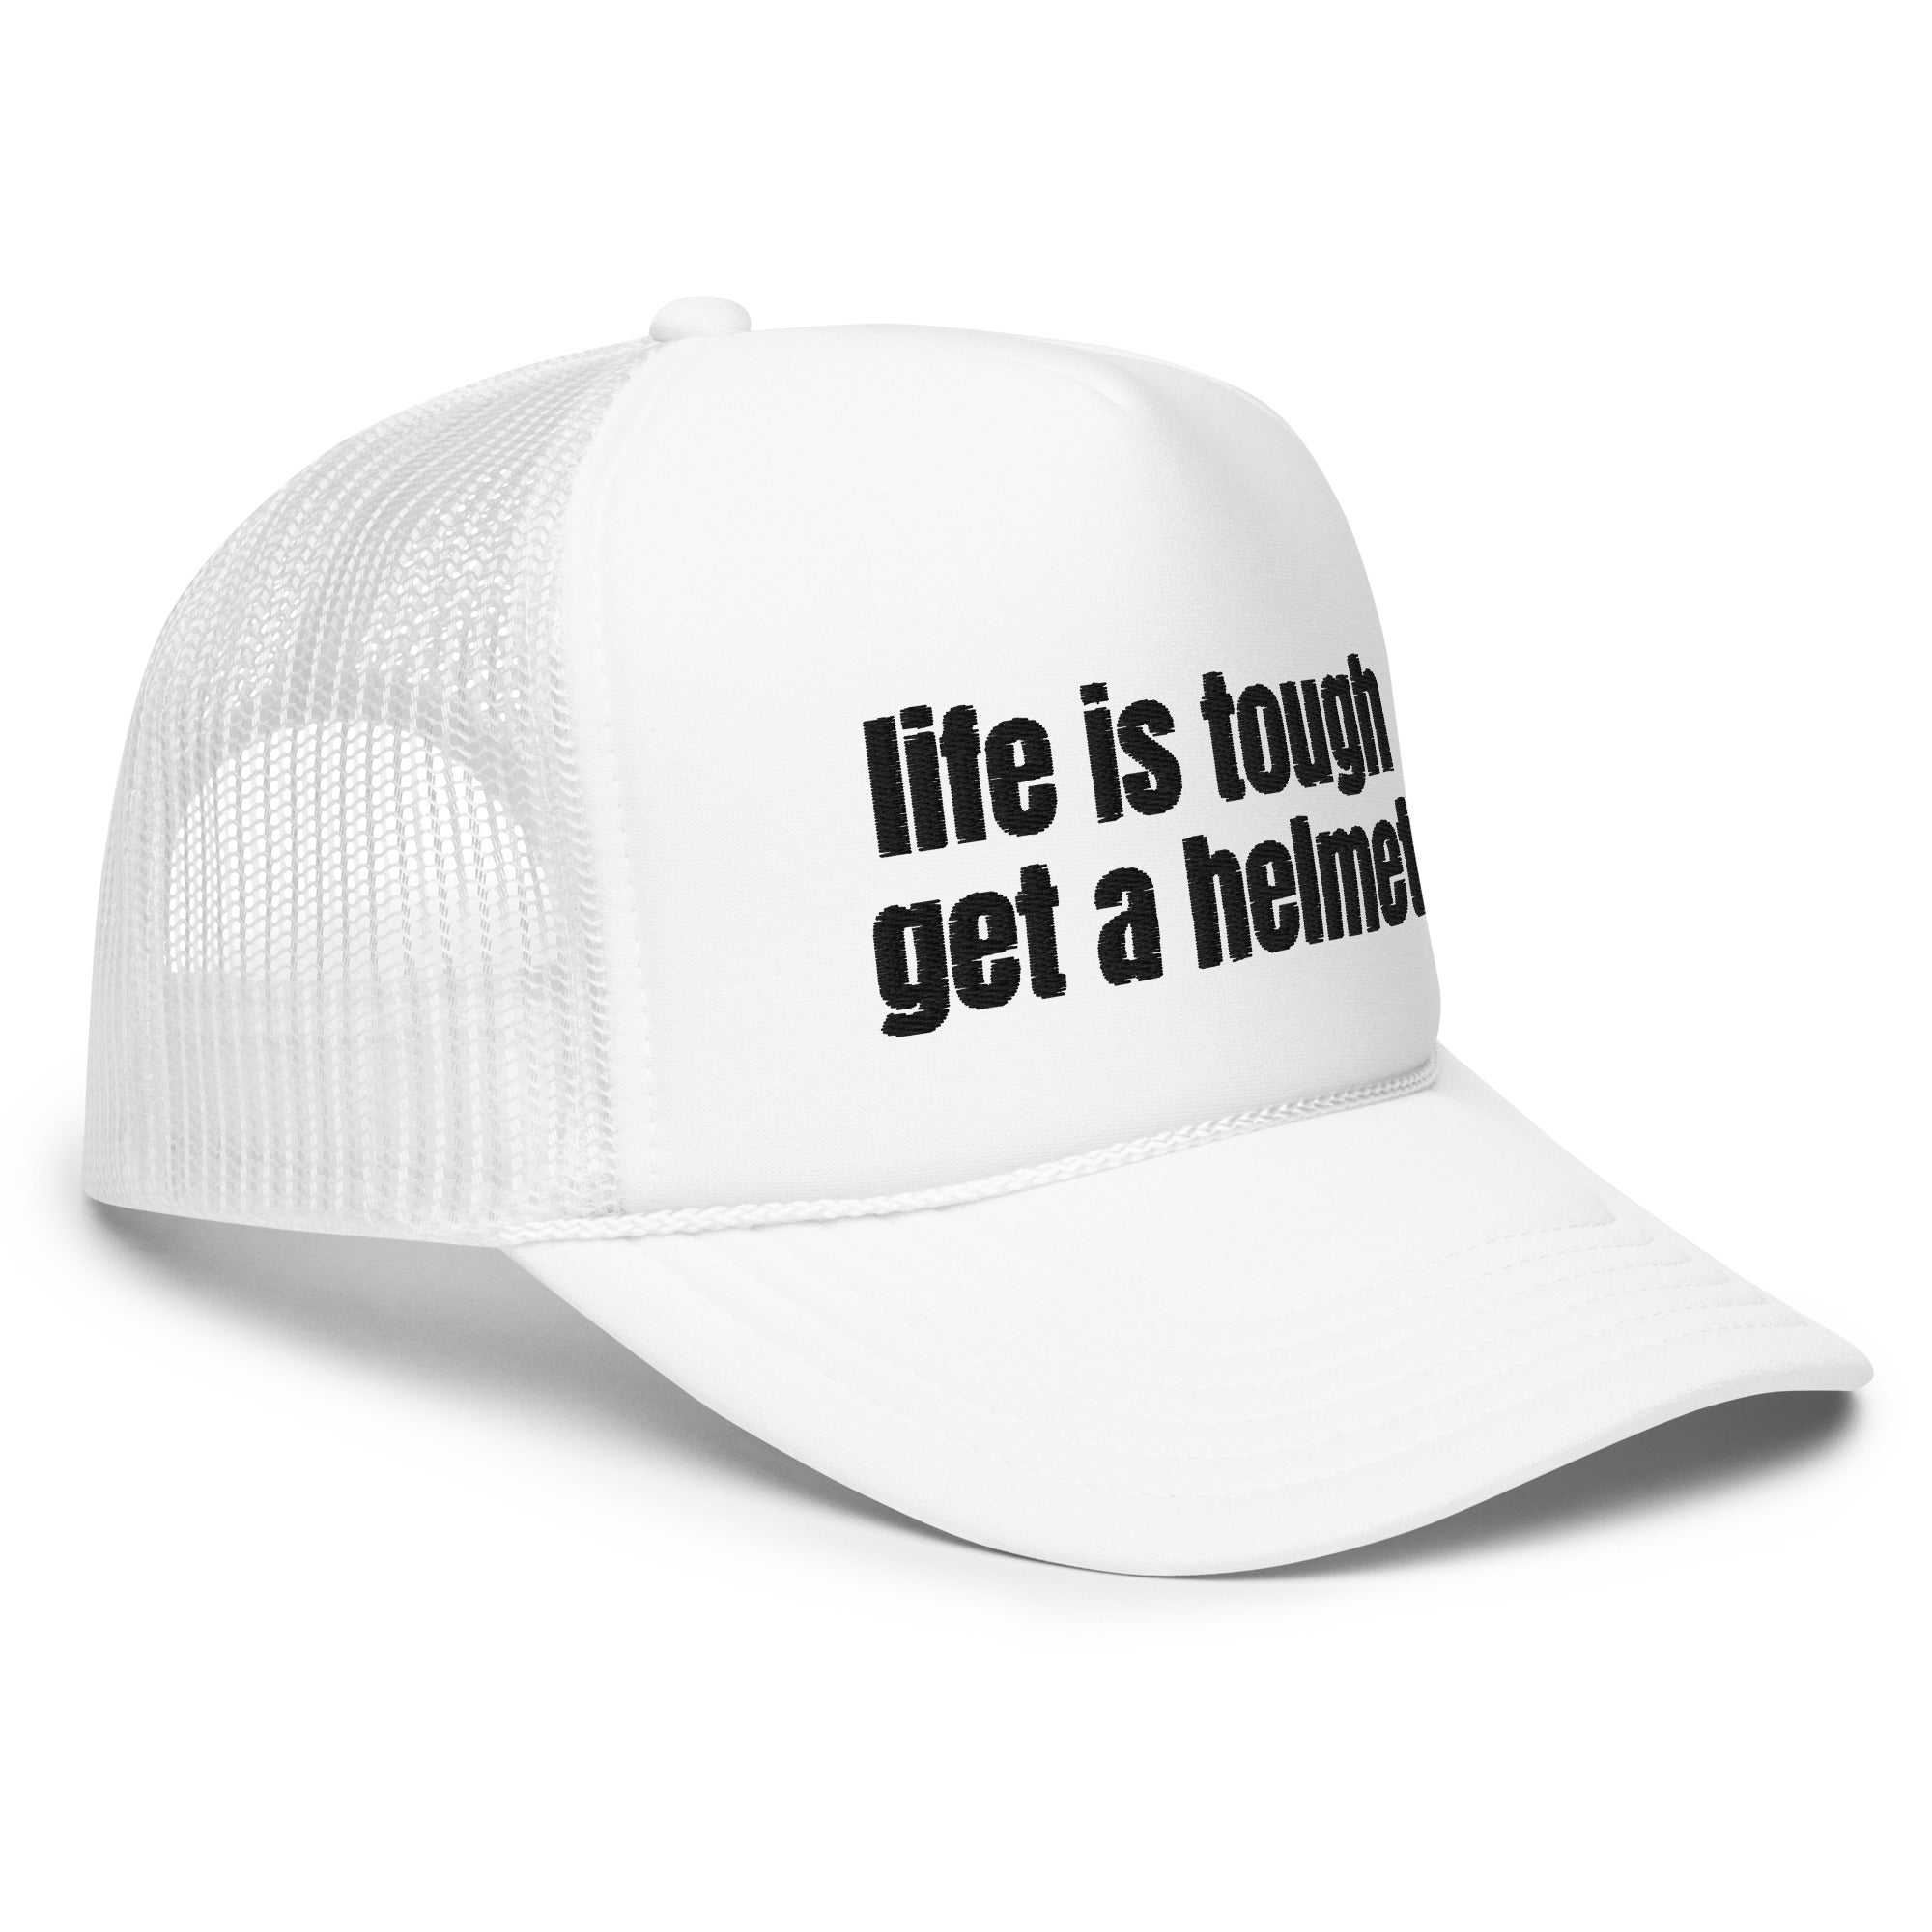 Life Is Tough, Foam trucker hat